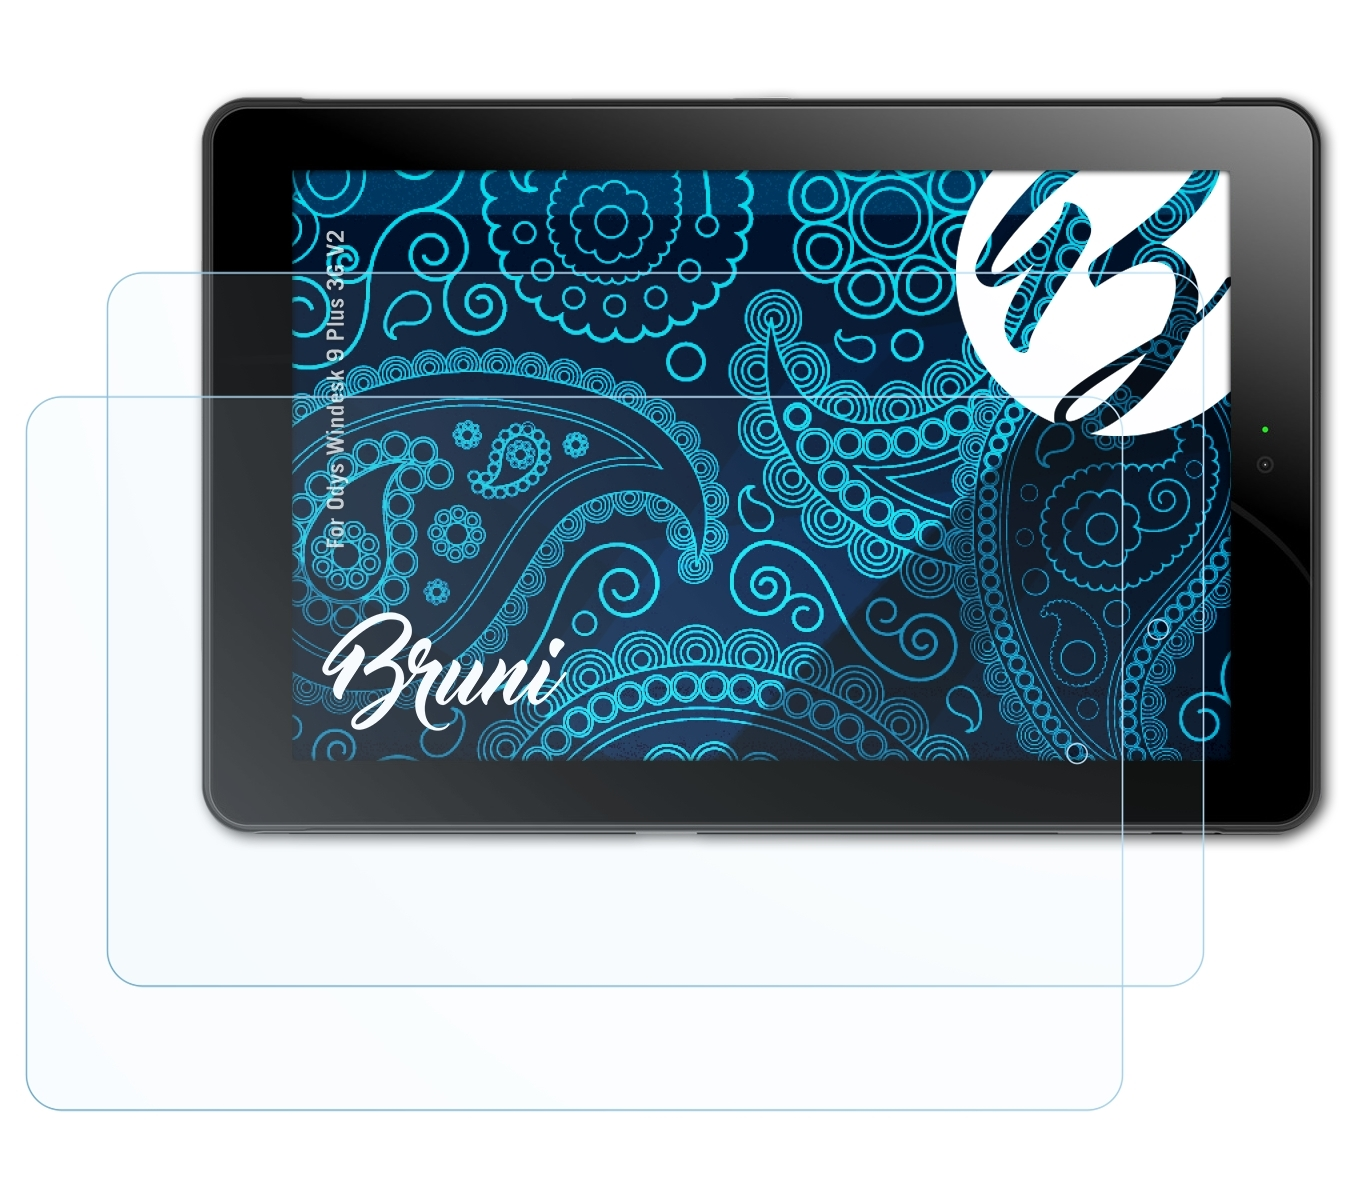 BRUNI 3G Plus V2) Odys 2x Schutzfolie(für Windesk 9 Basics-Clear